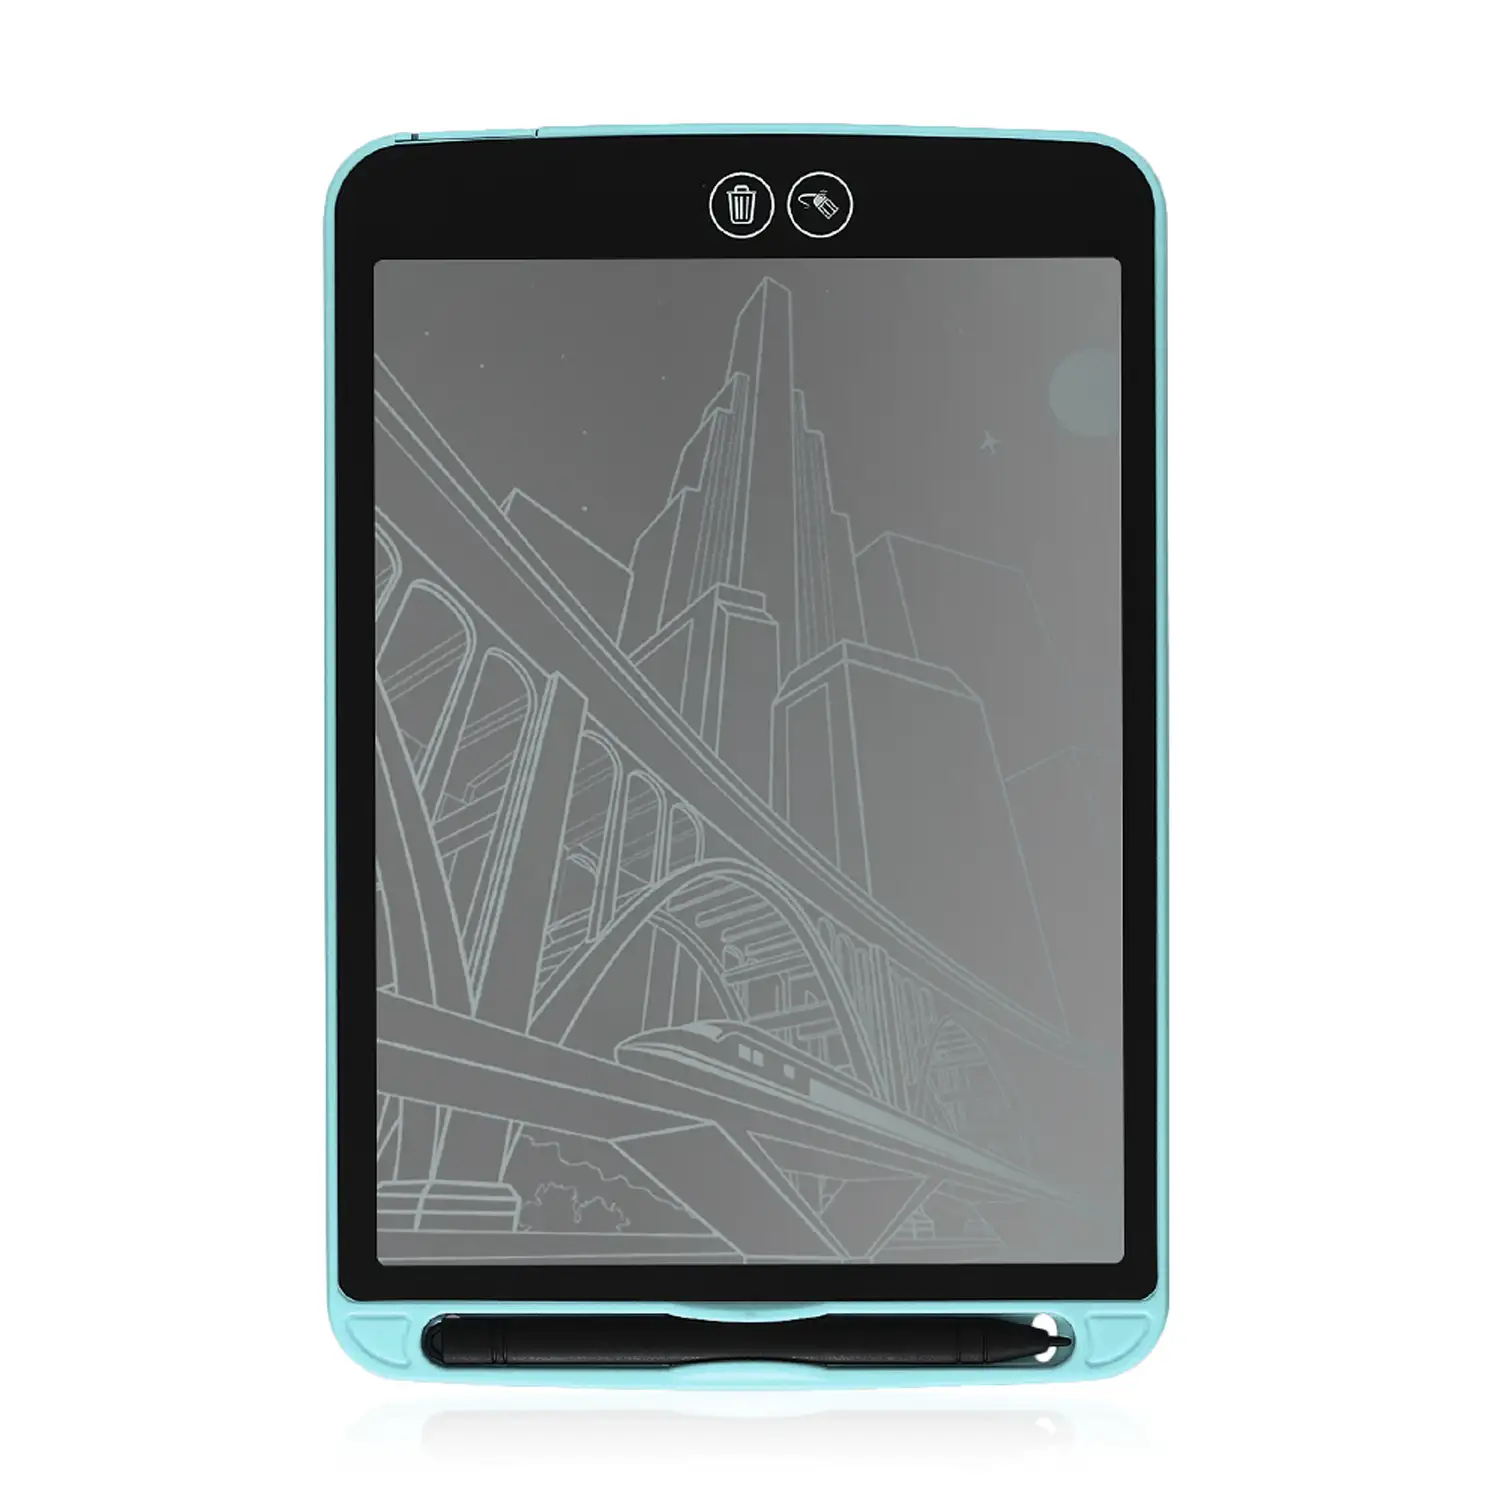 Tableta LCD portátil y escritura de 10 pulgadas con borrado selectivo y bloqueo de